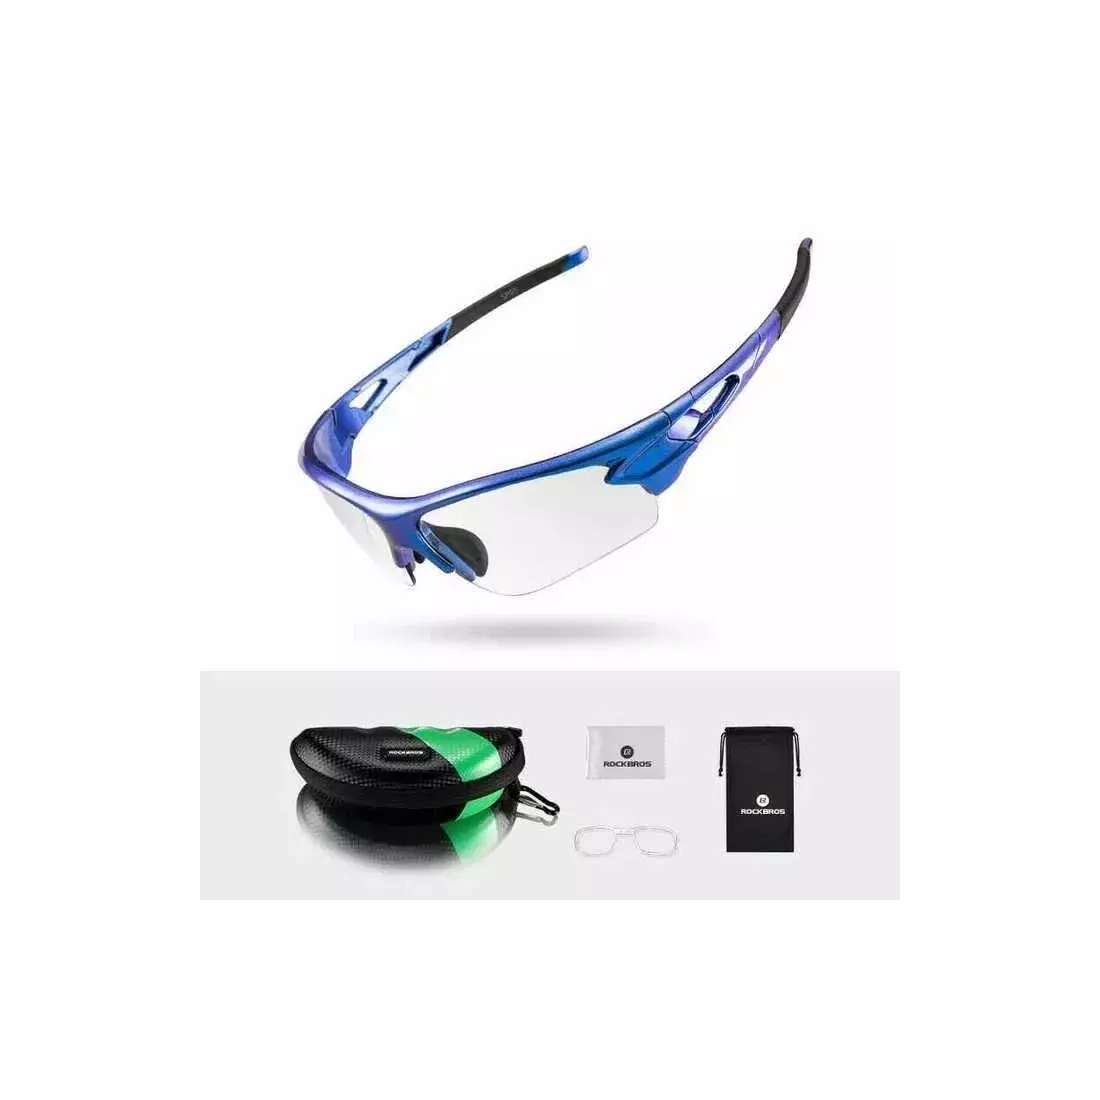 Cyklistické/športové okuliare Rockbros s fotochrómovou modrou 10069